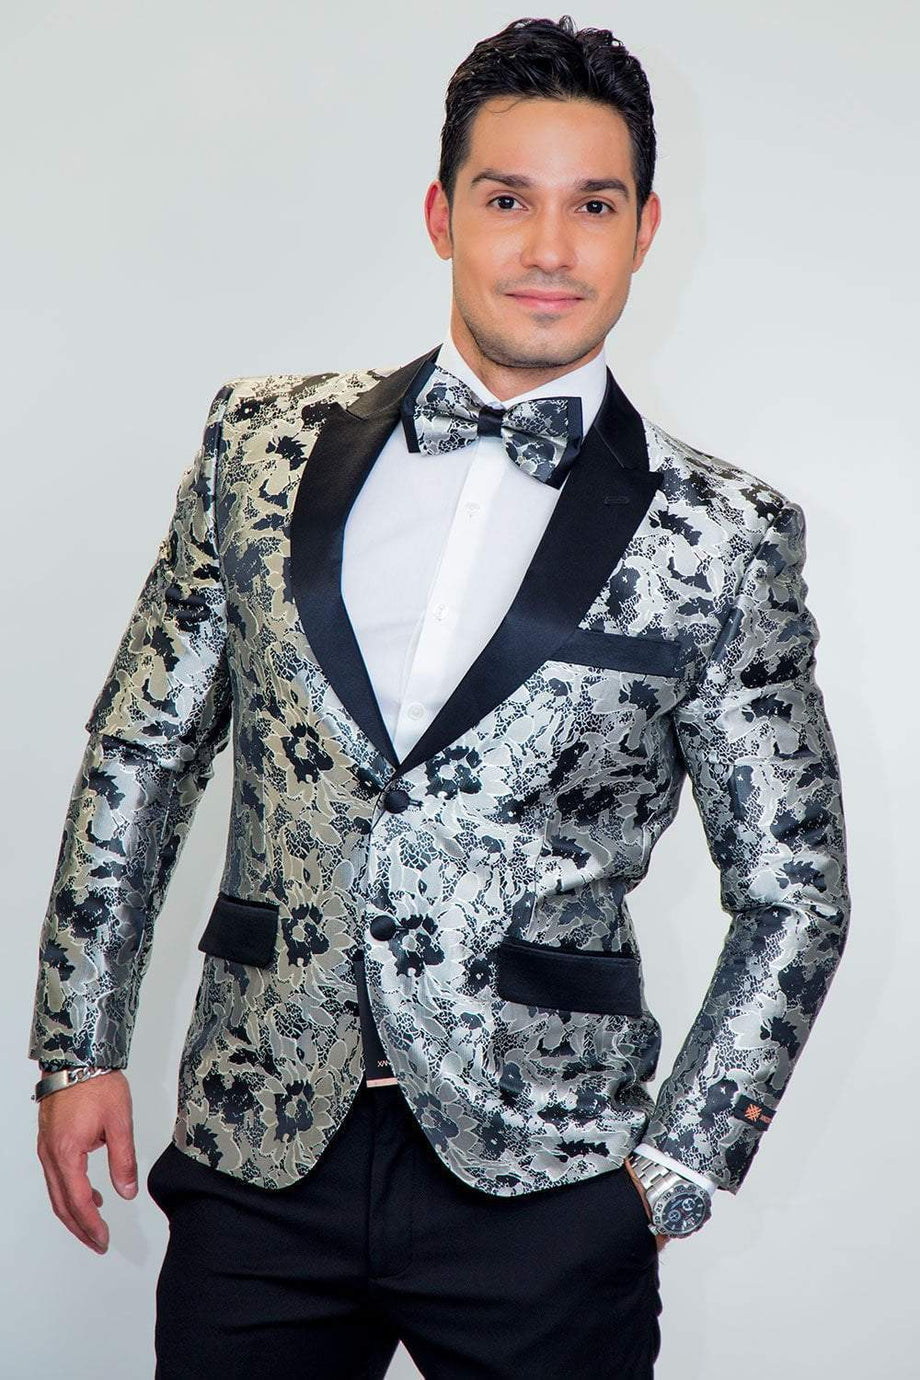 Xander Xiao "Amsterdam" Silver Tuxedo Jacket (Separates)